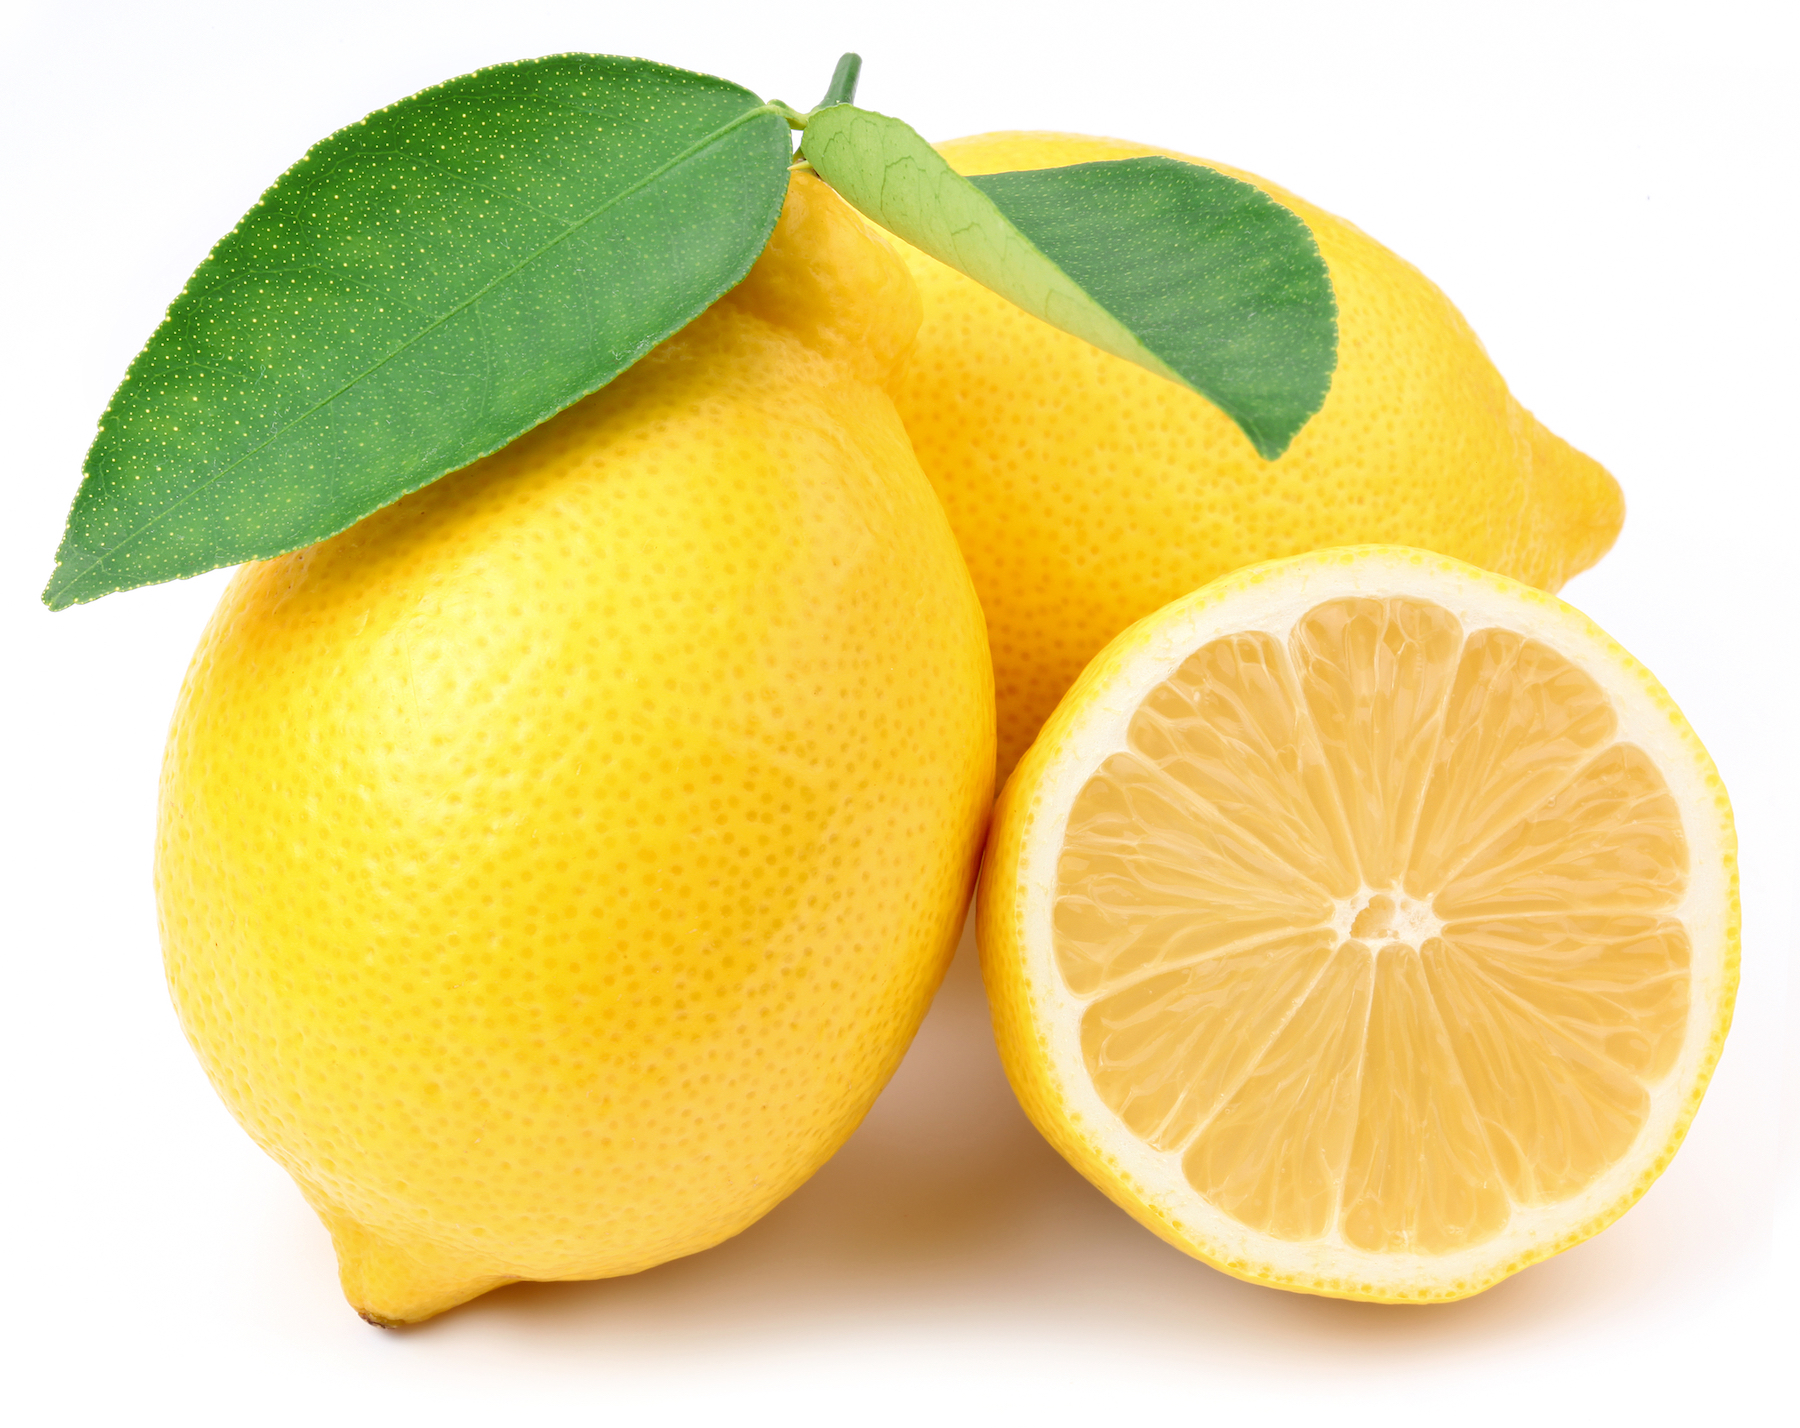 Distilling Lemons